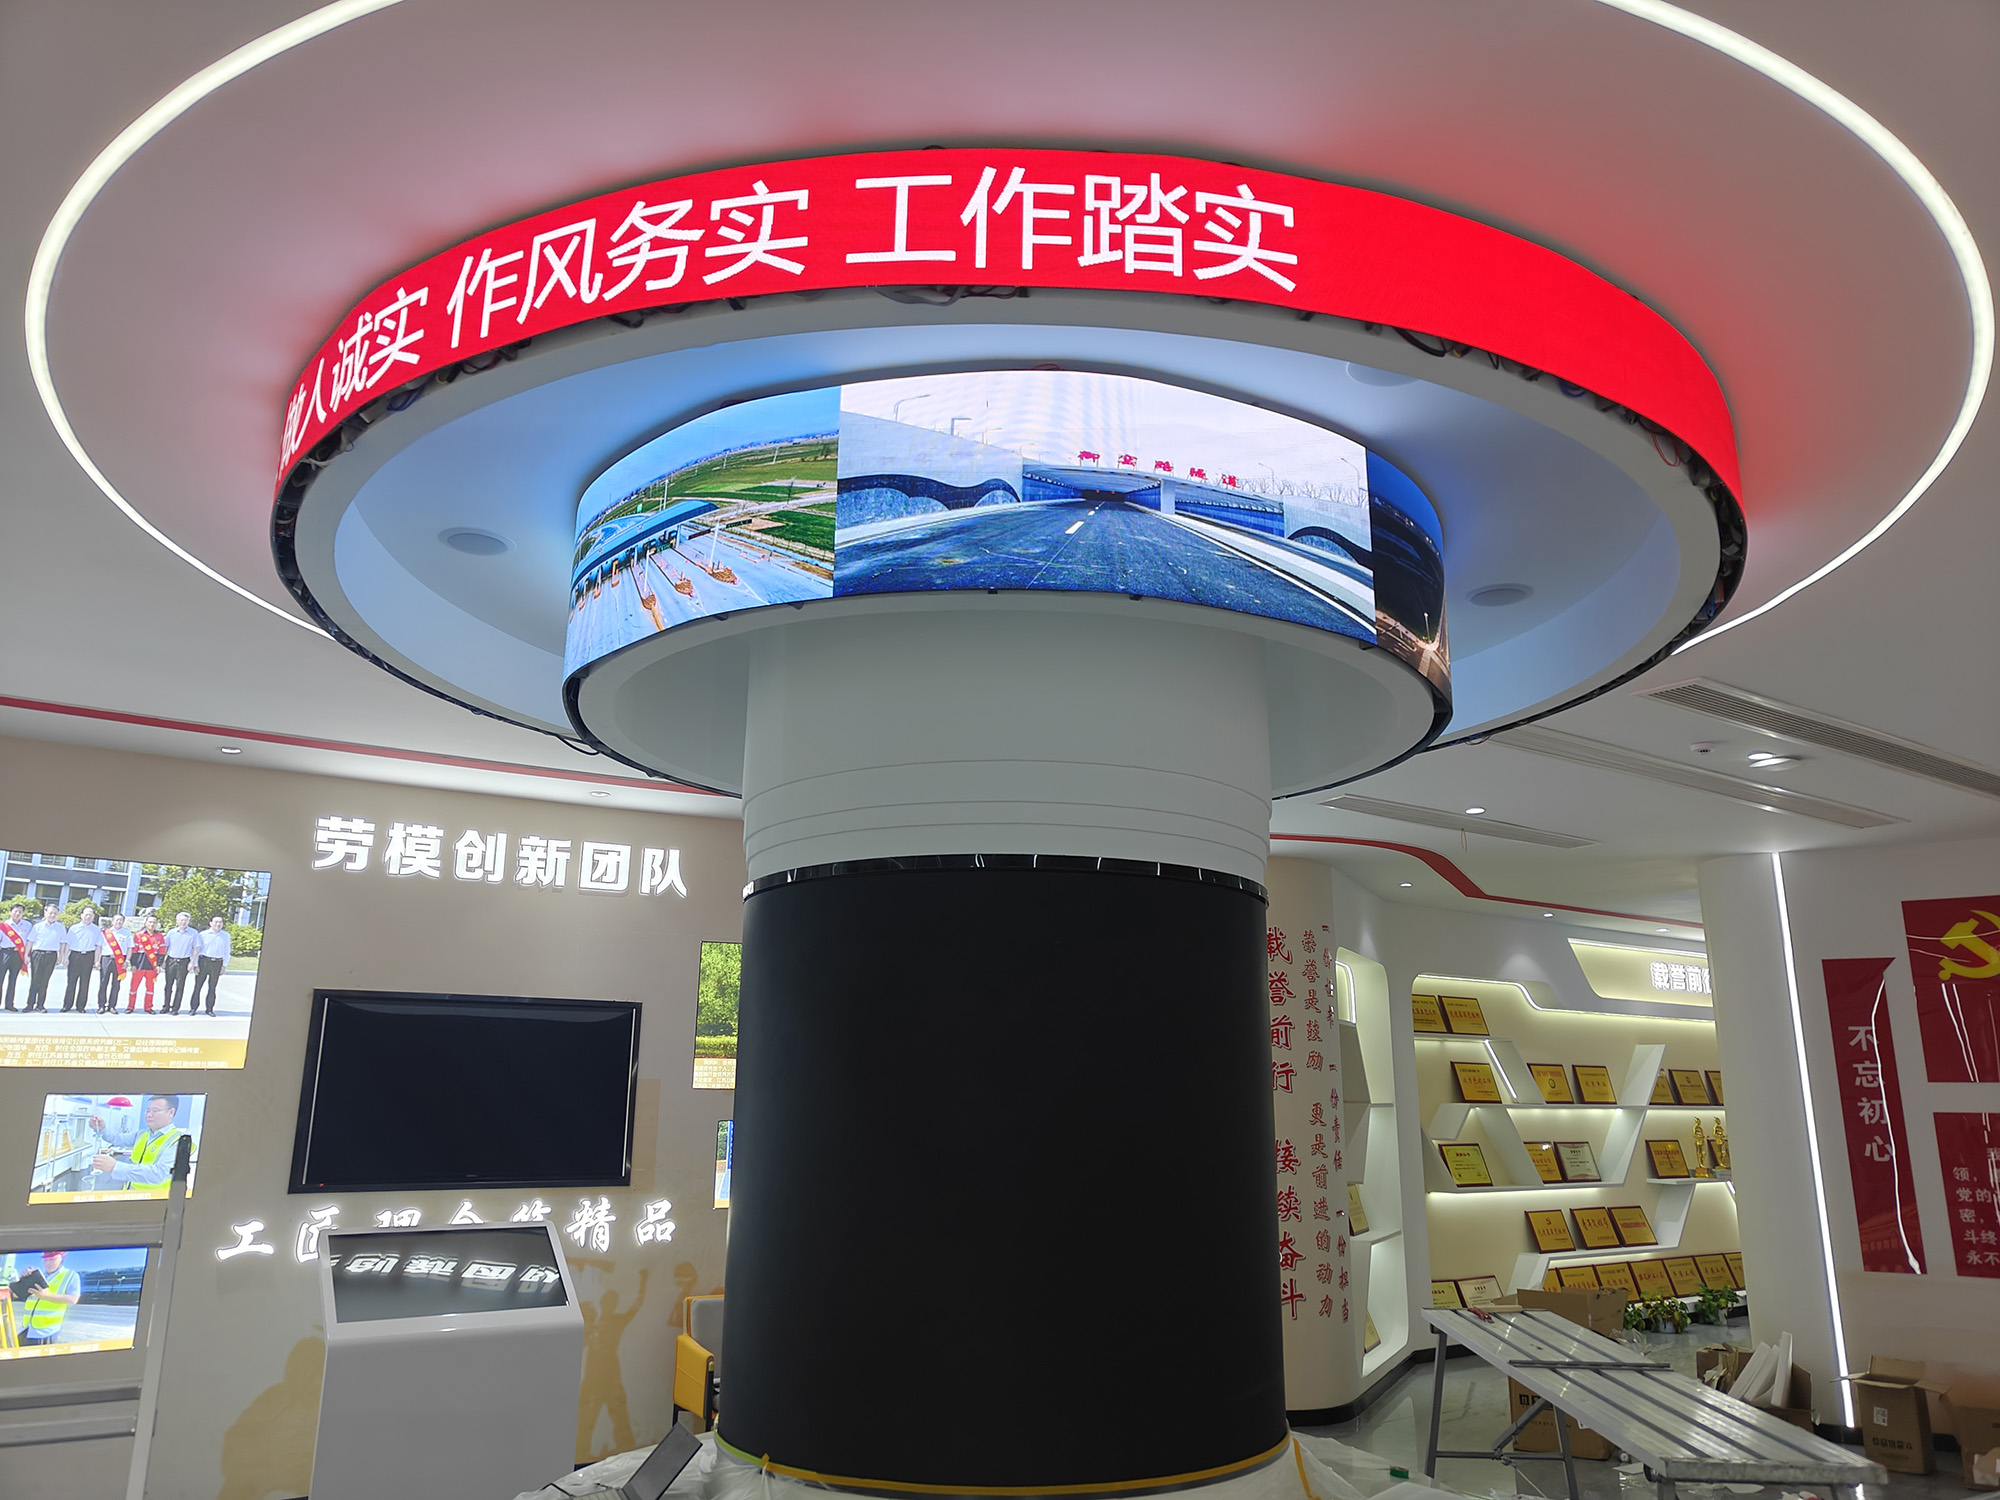  江苏省徐州市鼓楼区软模组P2.0 led显示屏案例图片3